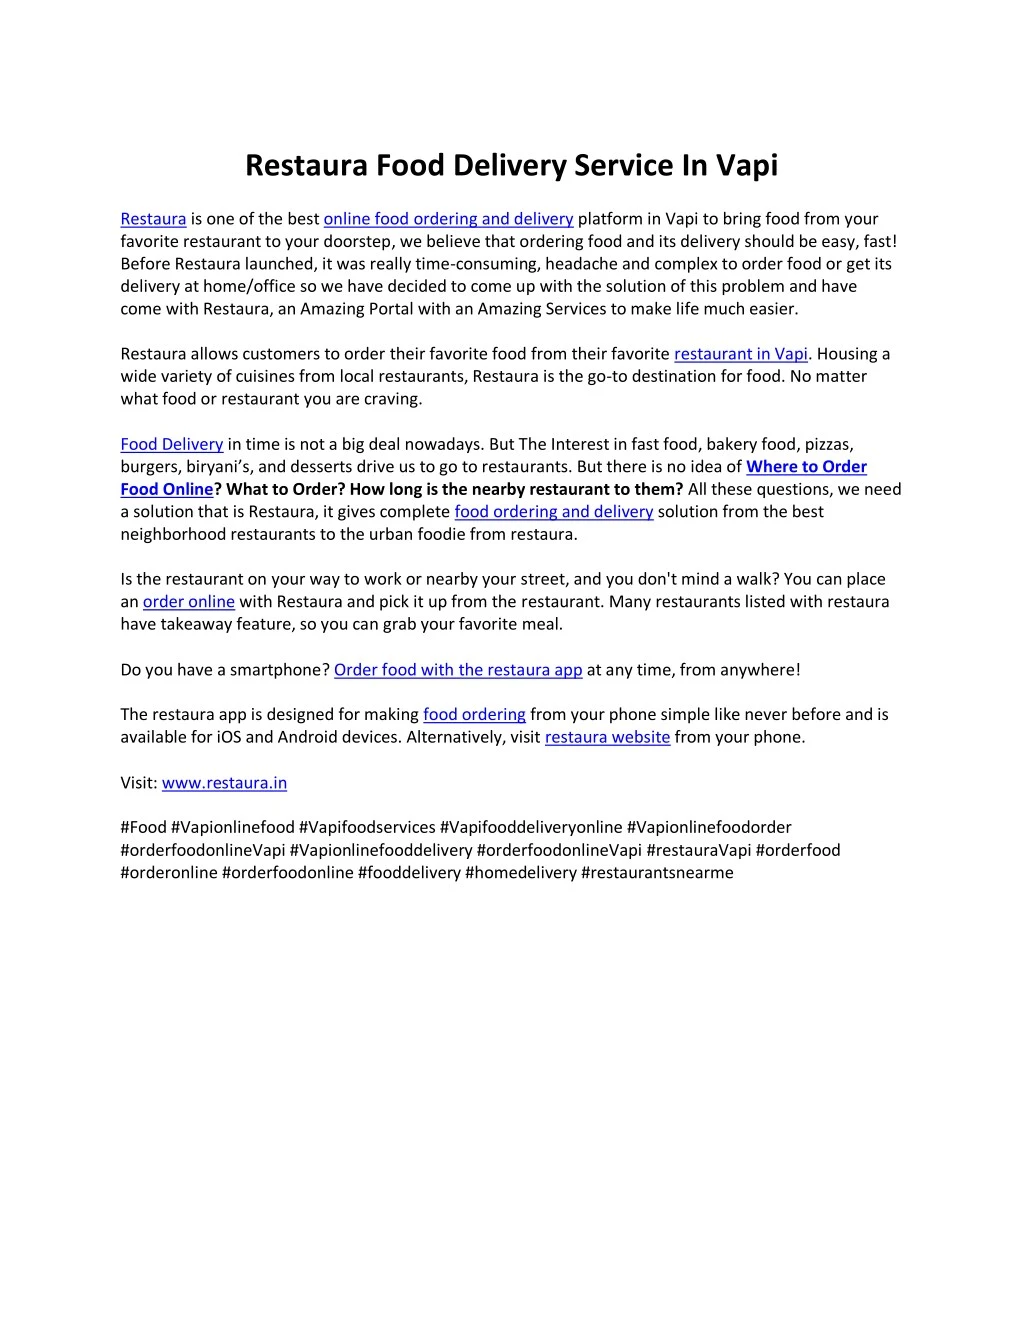 restaura food delivery service in vapi